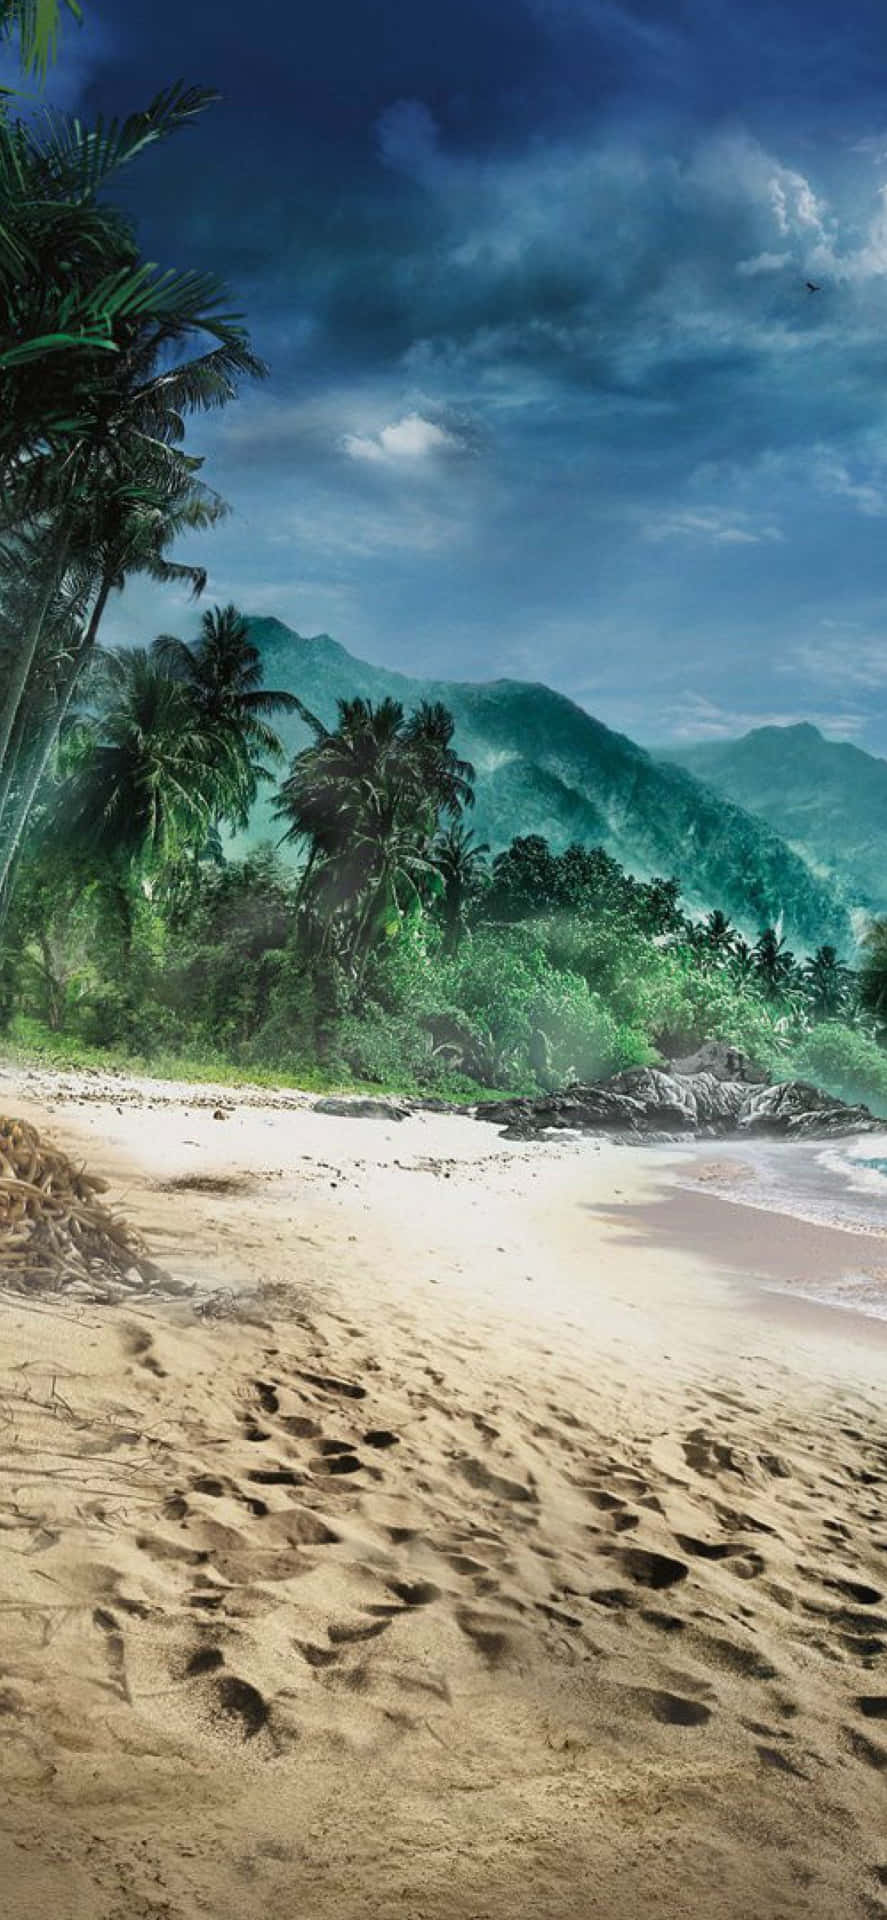 Baggrund for Iphone Xs Max Far Cry 3 Rook Island Fodspor